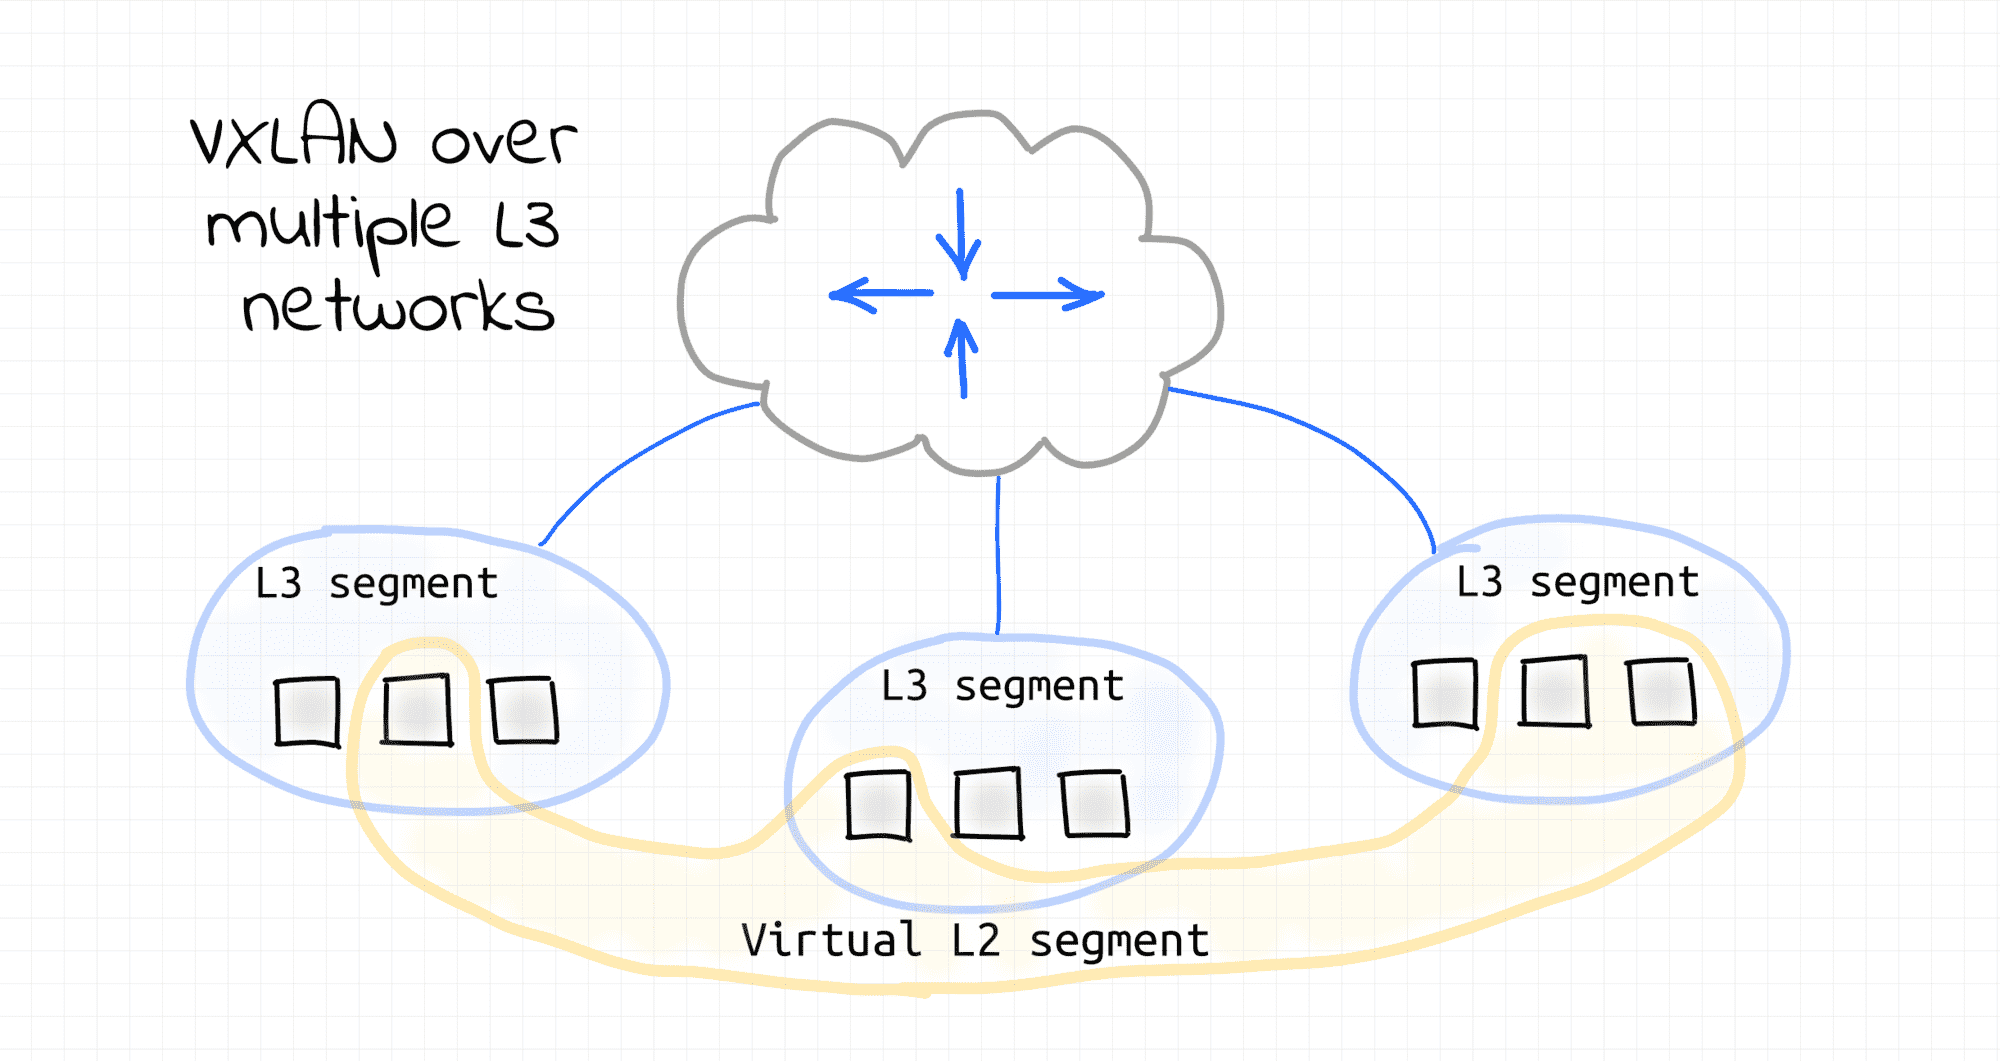 VXLAN over multiple L3 networks